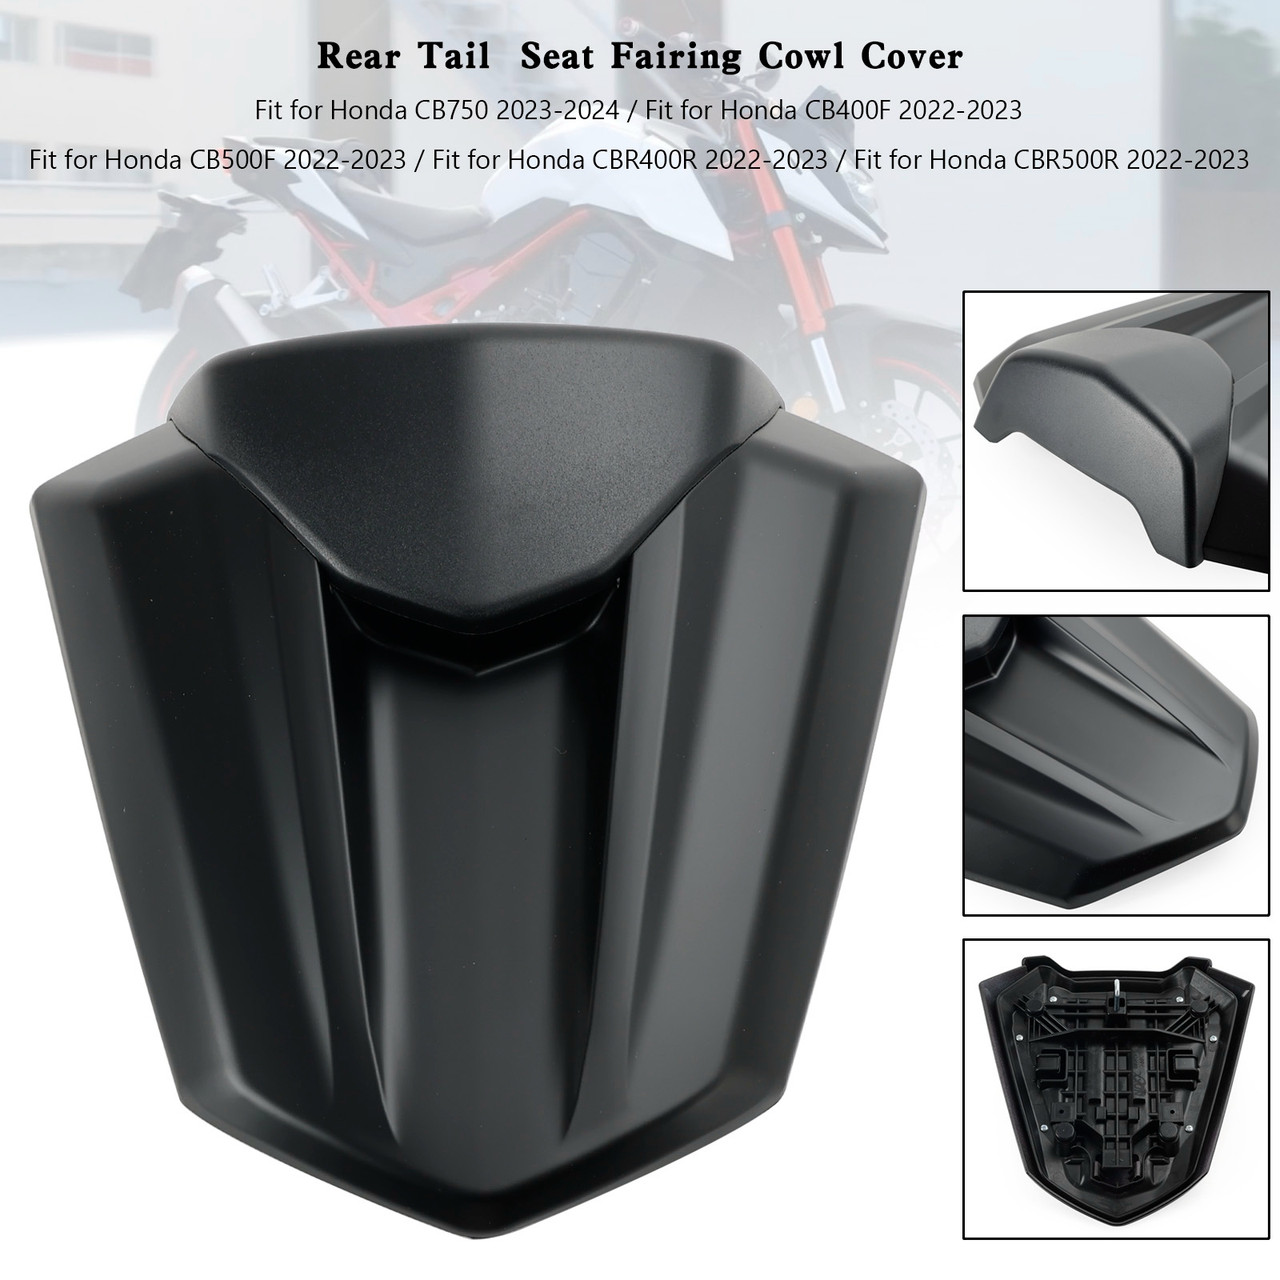 Rear Tail Seat Fairing Cover For Honda CB750 CB400F CB500F CBR400R CBR500R 22-23 Matt